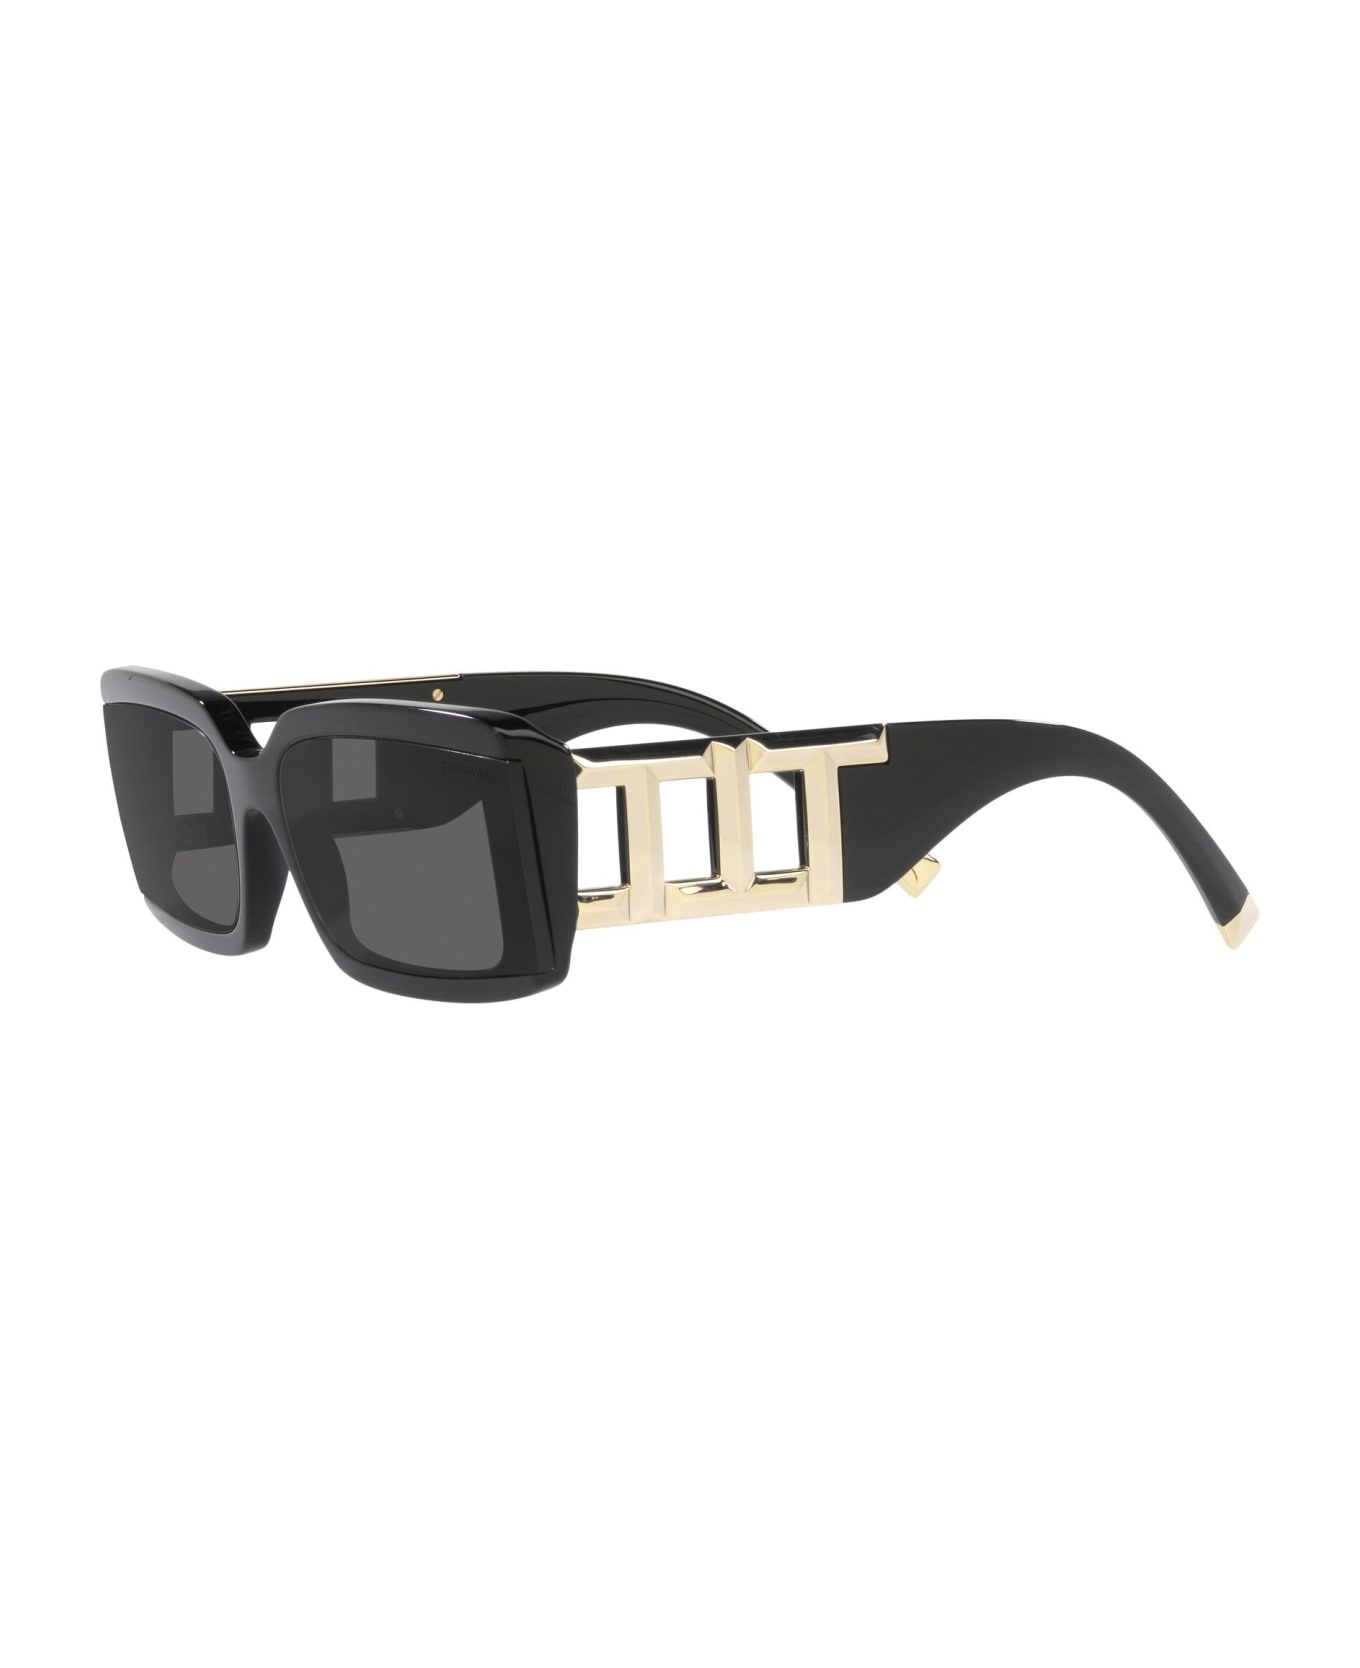 Tiffany & Co. Sunglasses - Nero/Nero